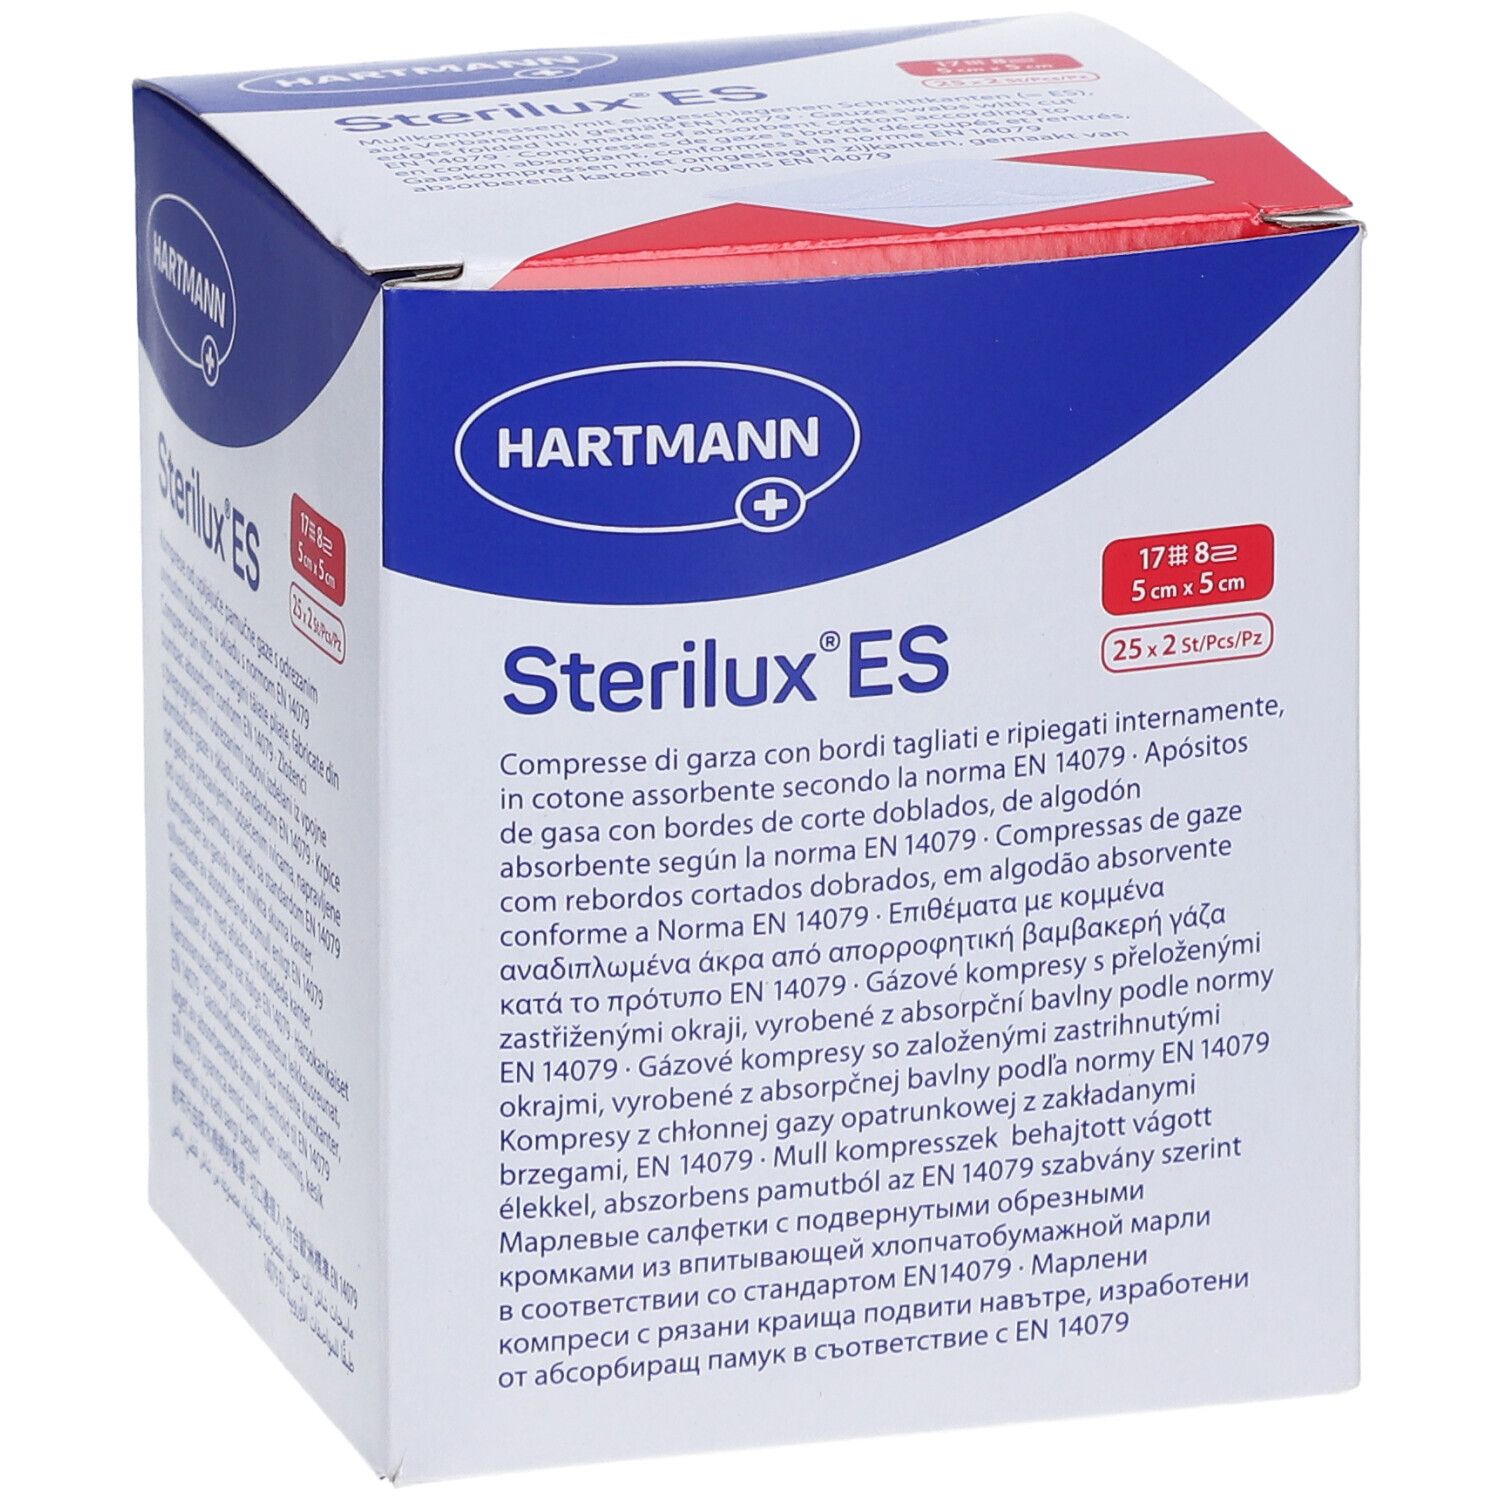 Sterilux® ES Compresse di Garza Sterili 5 cm x 5 cm